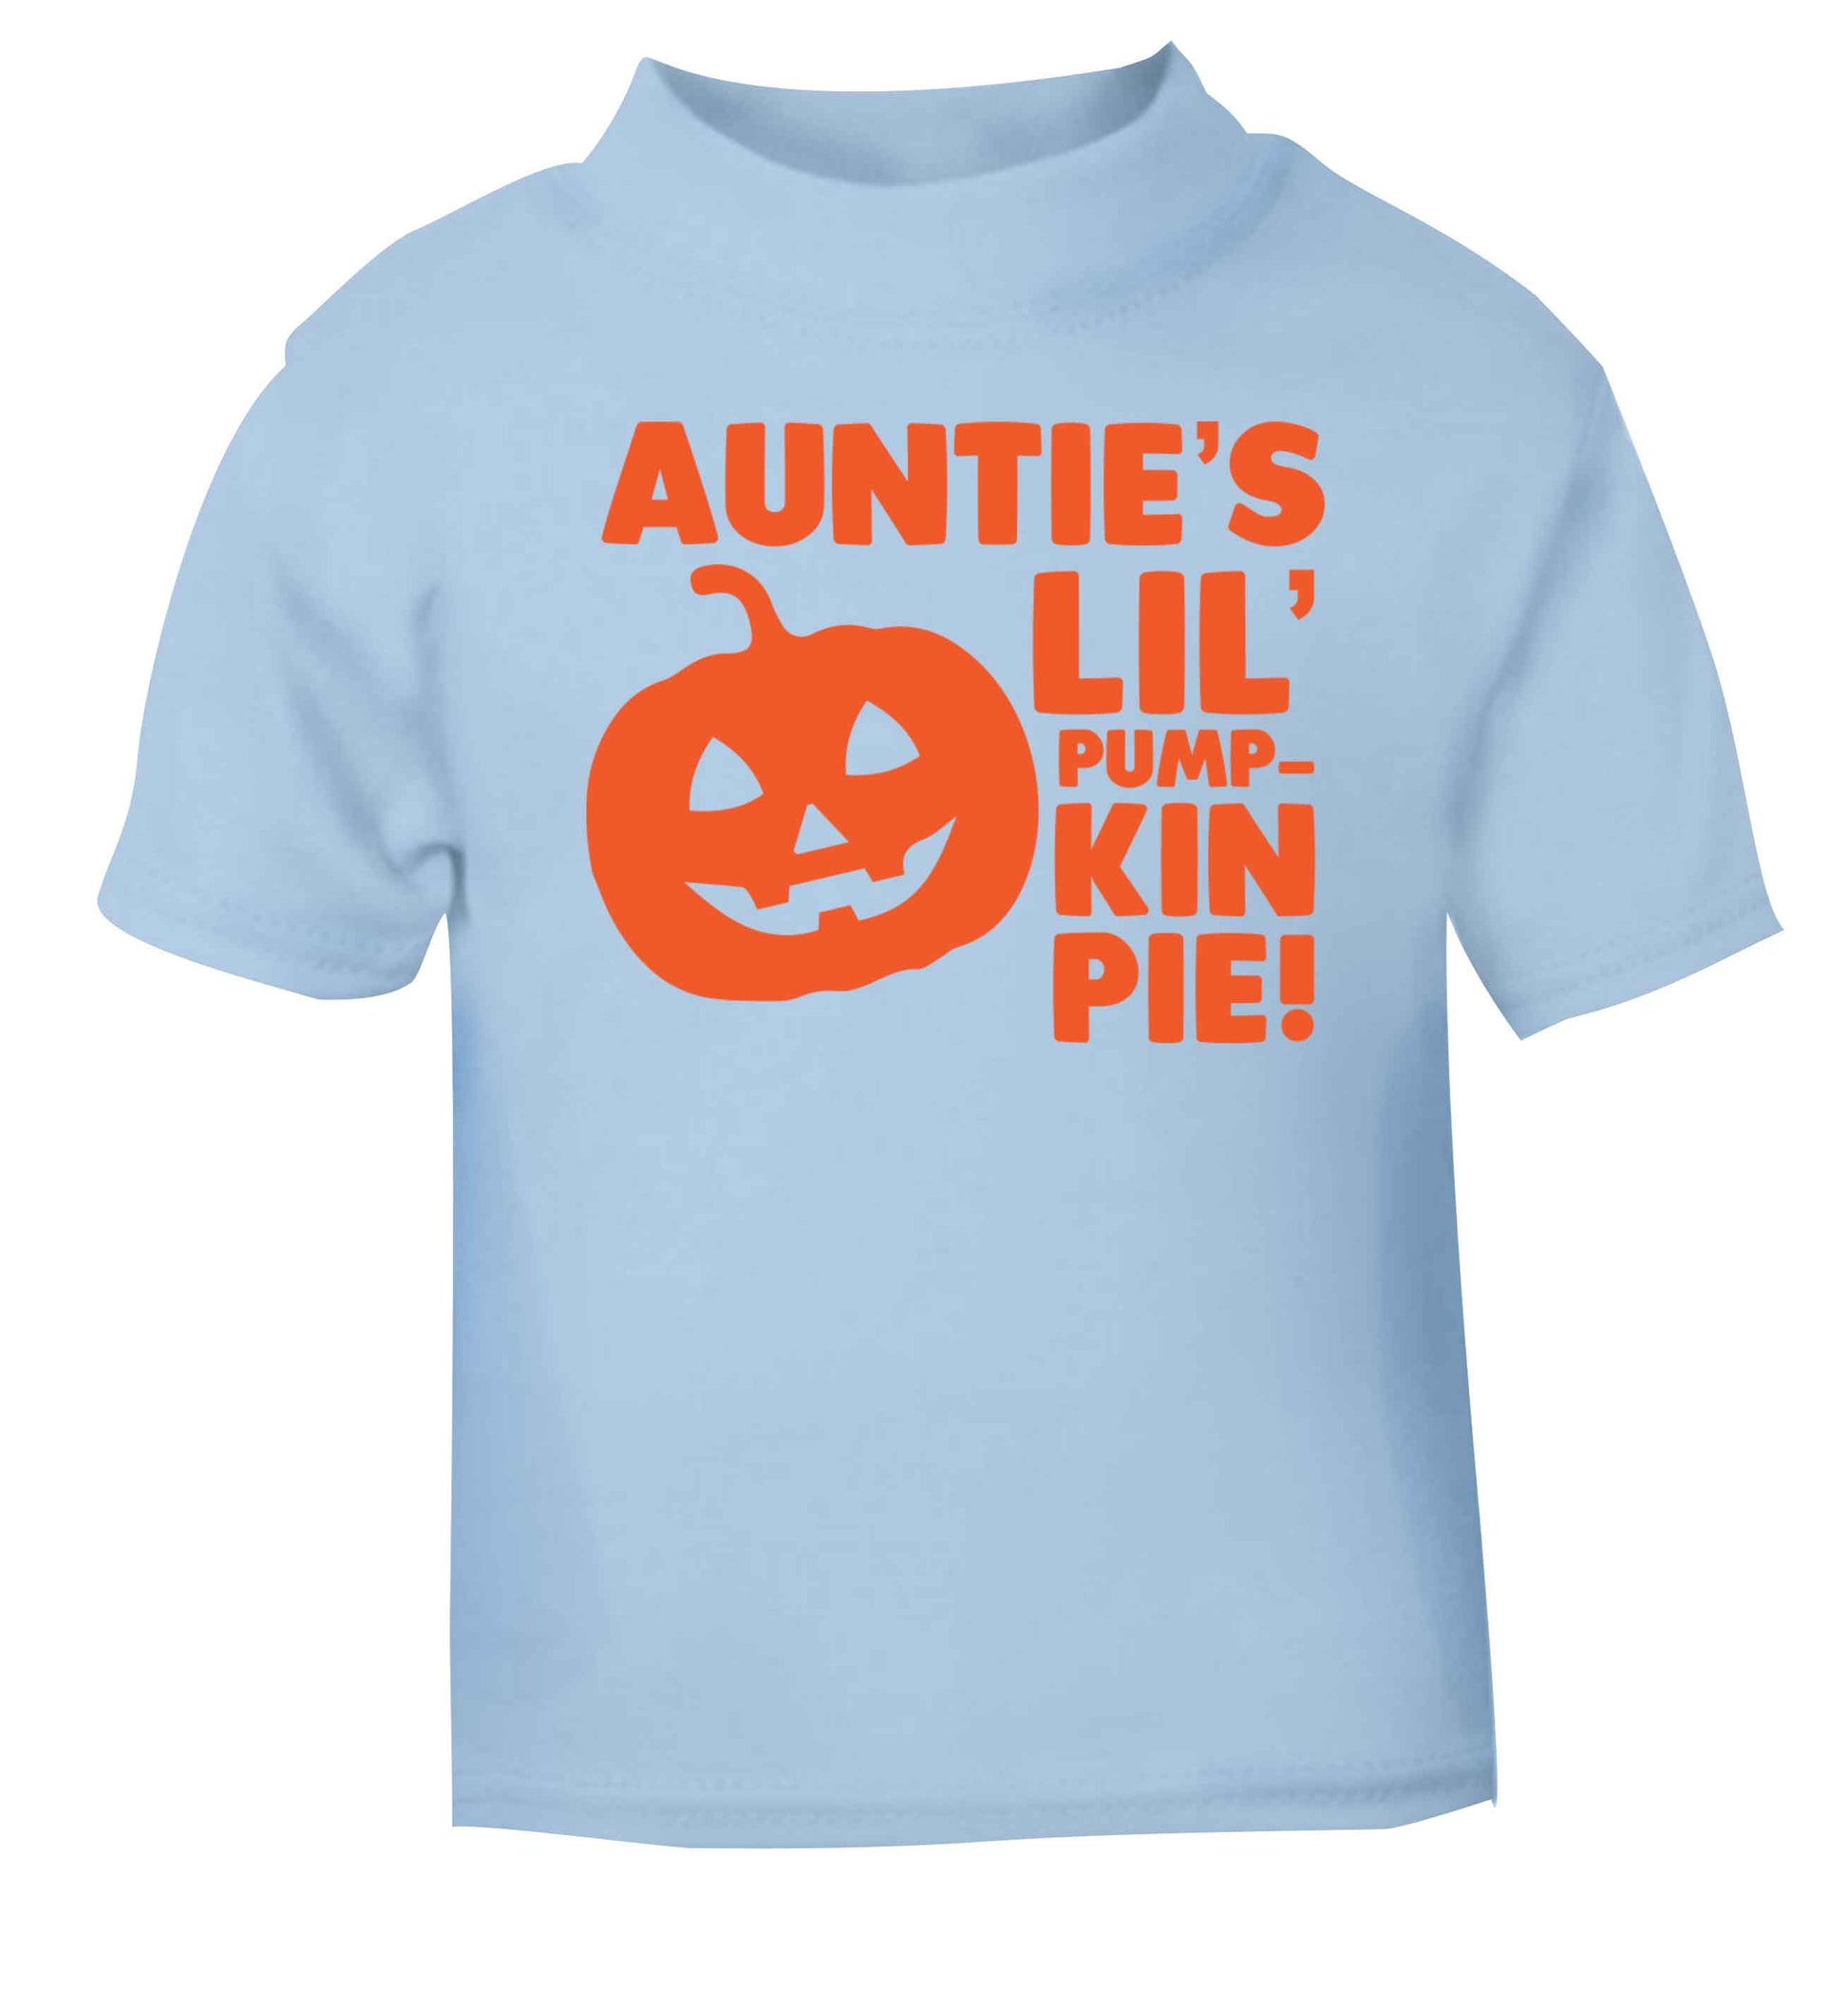 Auntie's lil' pumpkin pie light blue baby toddler Tshirt 2 Years